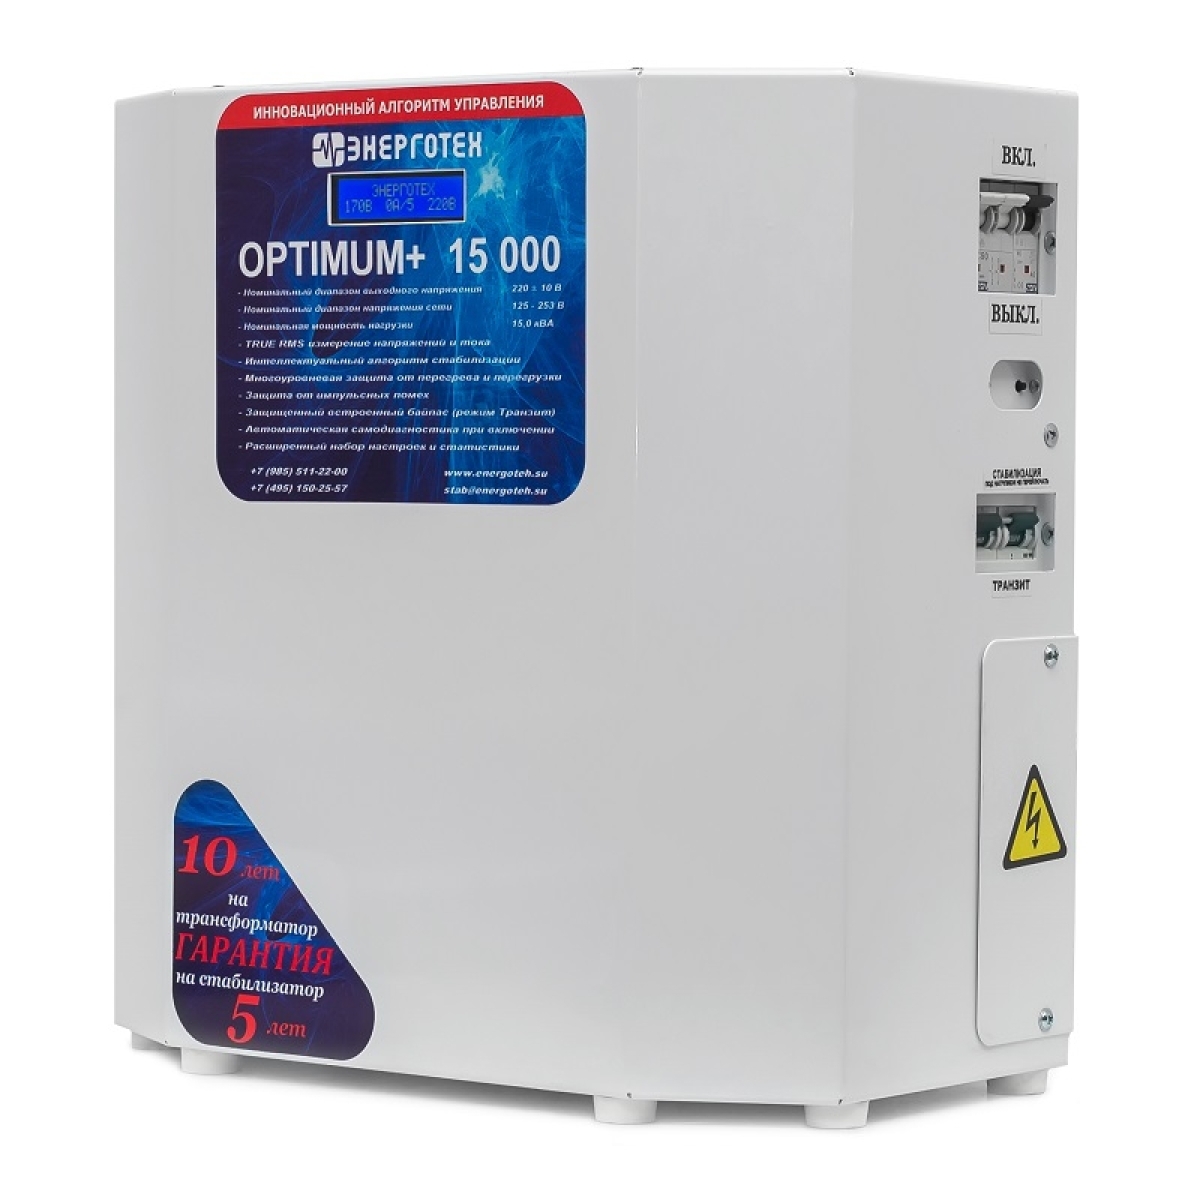 Однофазный стабилизатор Энерготех OPTIMUM+ 15000(HV), вид справа